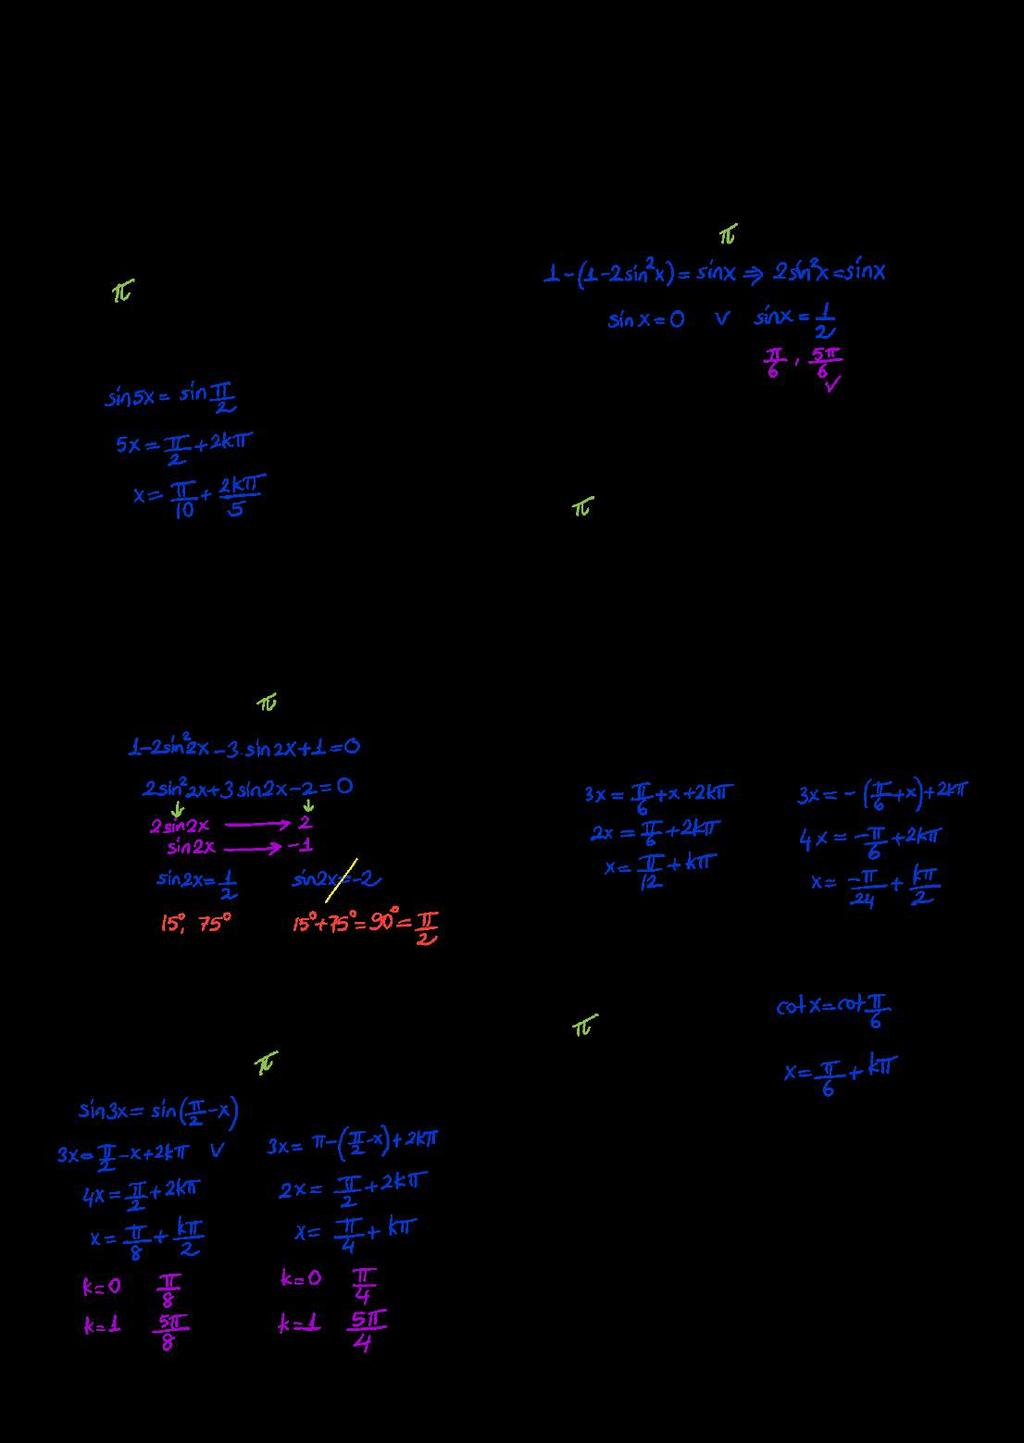 TGOOMTK KM TST. sin = denkleminin de çözüm kümesi aşağıdakileden hangisidi? k ) ' + k, k d Z ) ( +, k! Z 0 0. cos = sin denkleminin kökleinden bii aşağıdakileden hangisidi? ) ) ) 7 ) ) k k ) ( +, k!